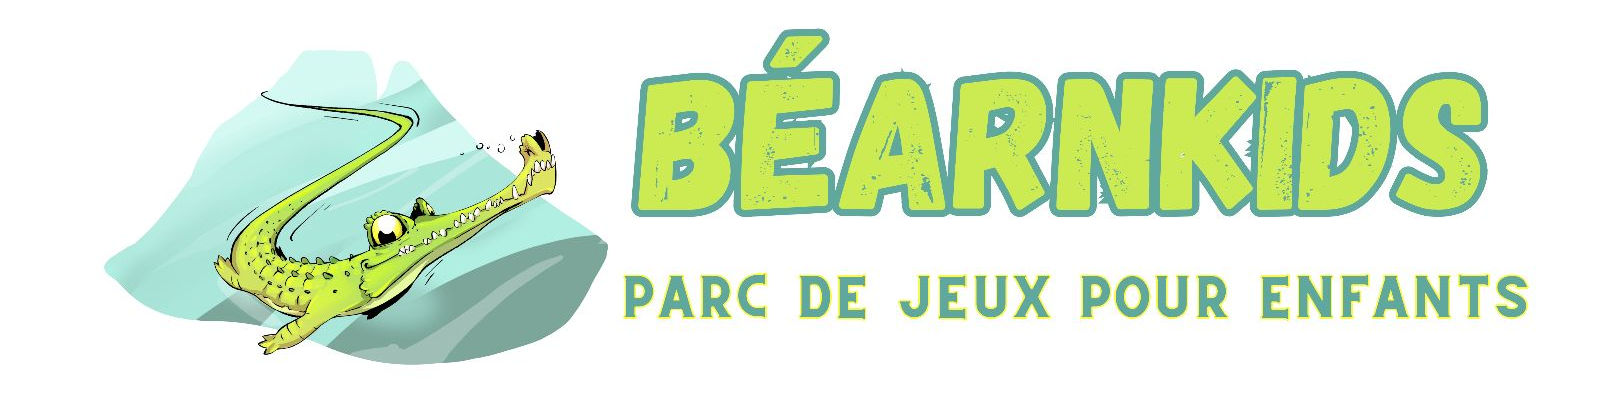 BearnKids-Bannière